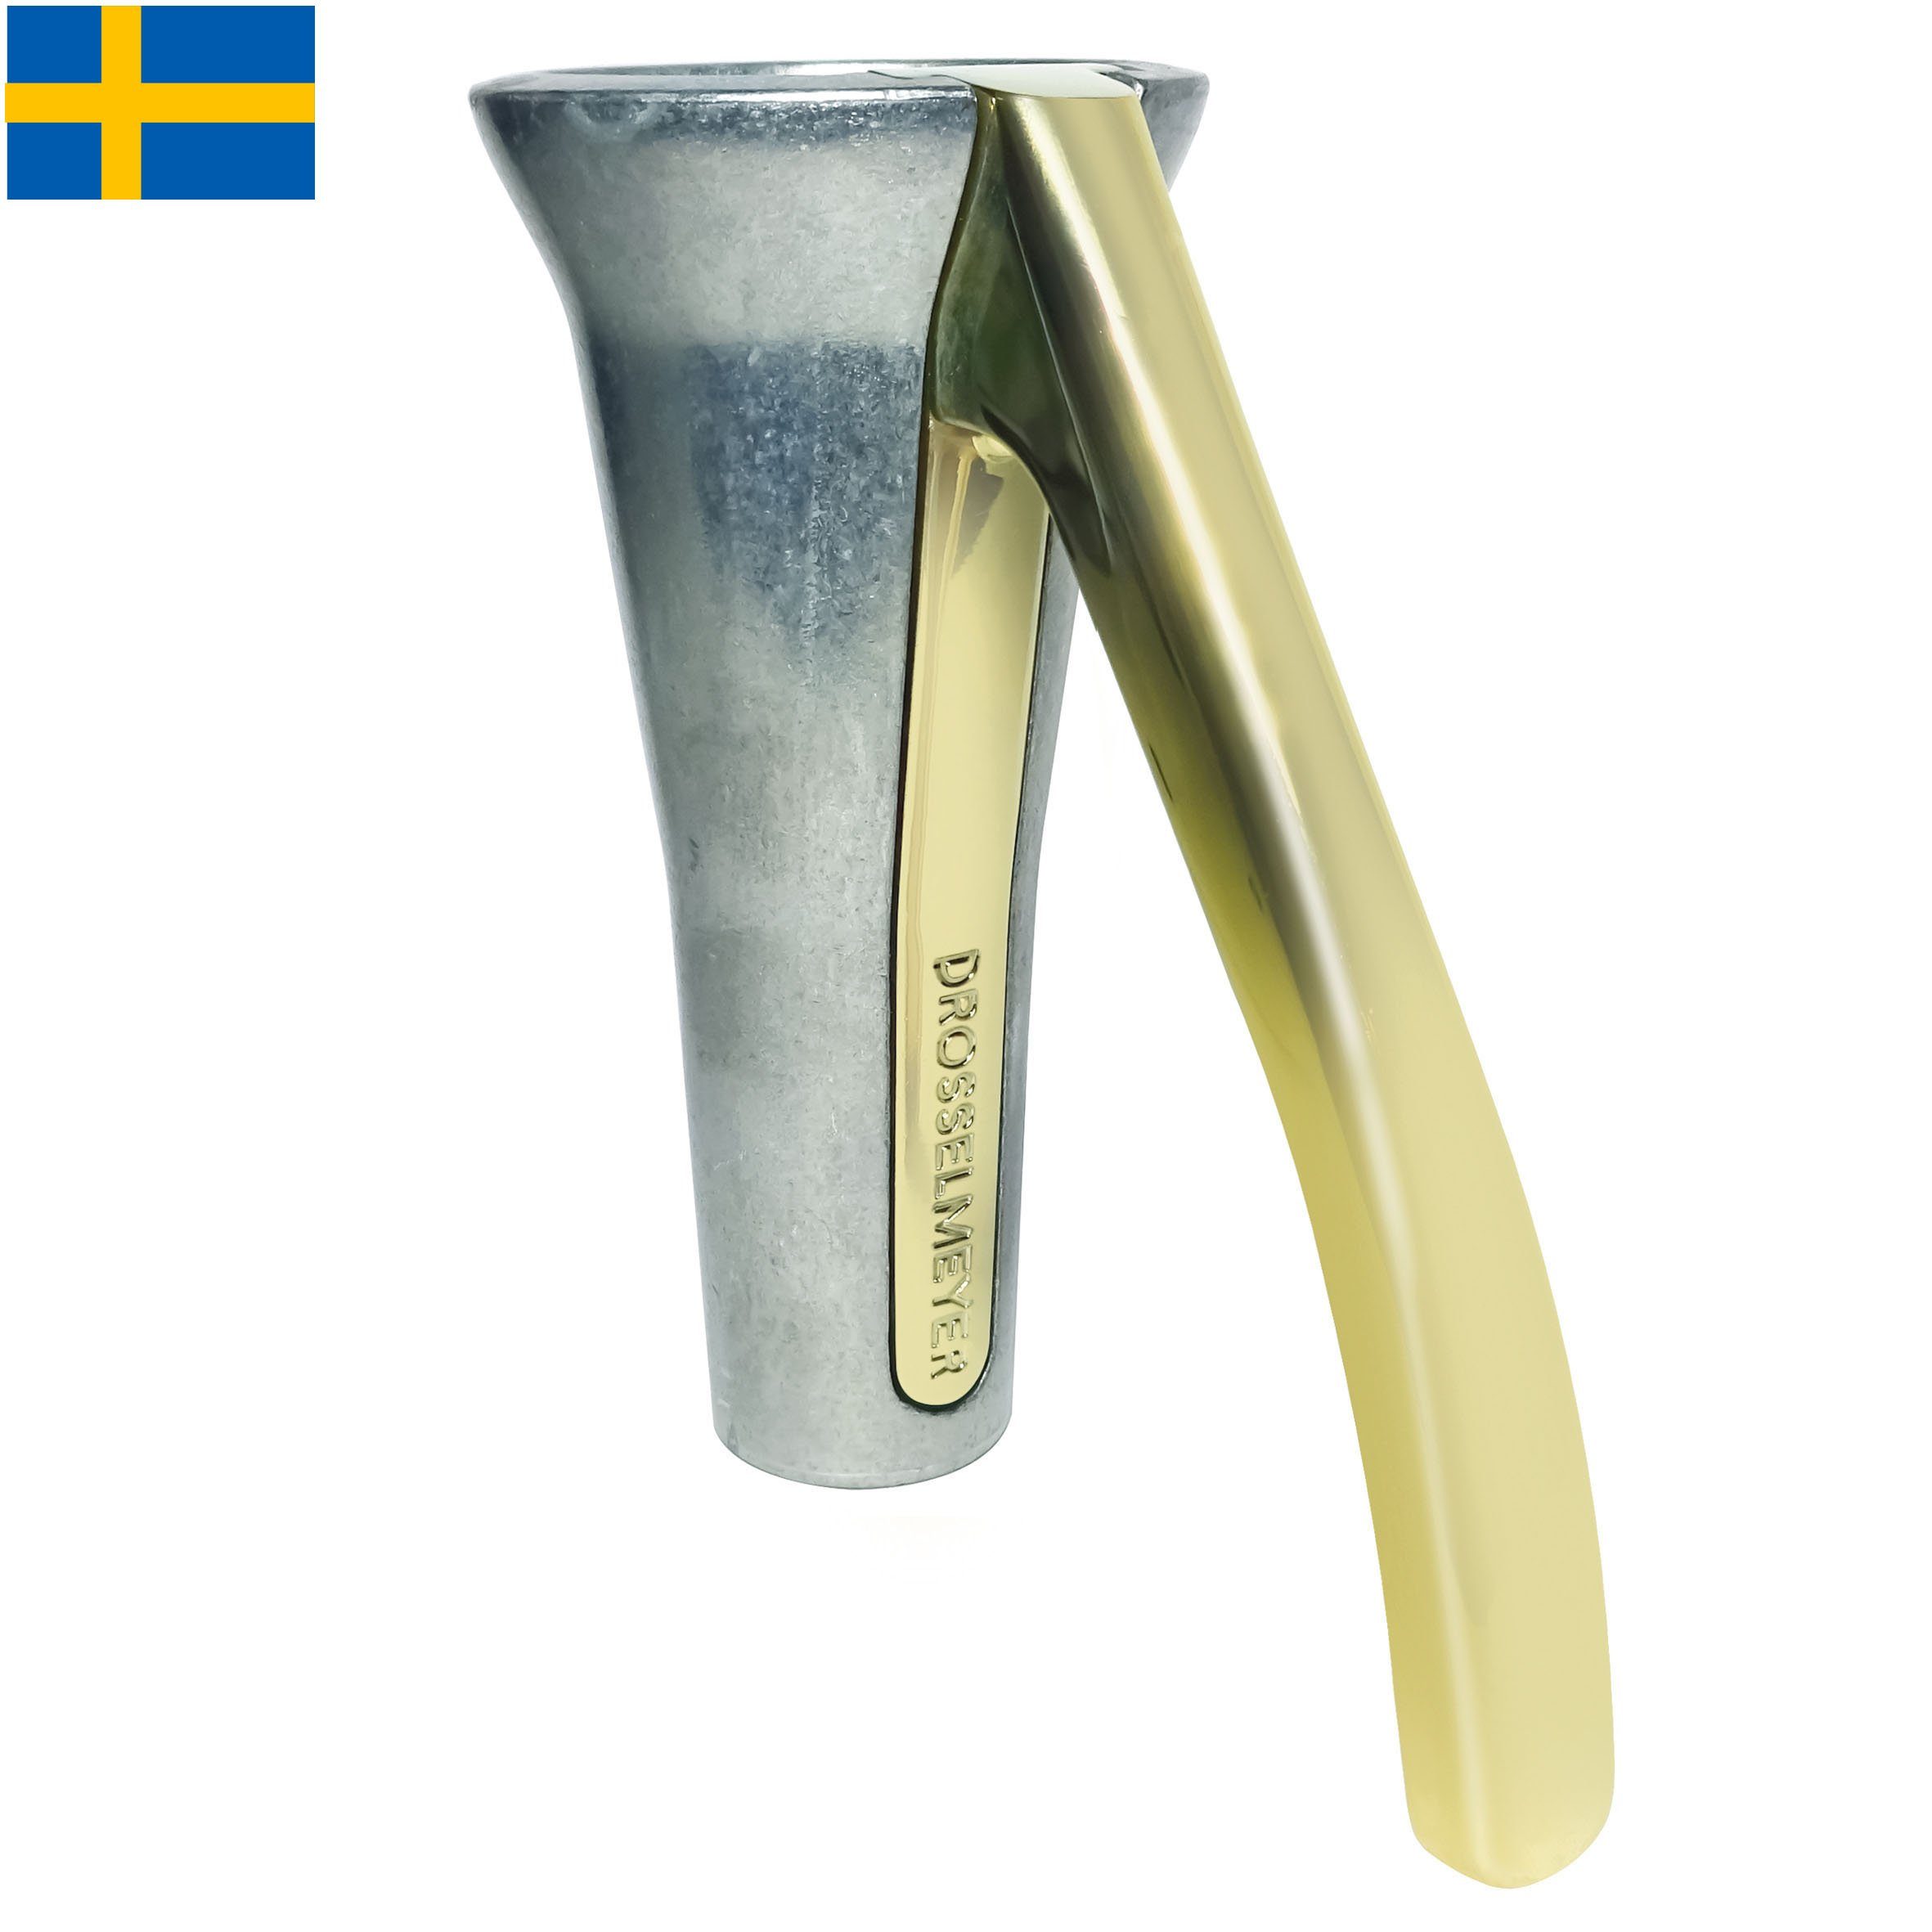 Drosselmeyer Nussknacker Nussknacker im eleganten schwedischen Design - knackt fast jede Nuss - Natur/Gold, patentiertes Hebelkonzept